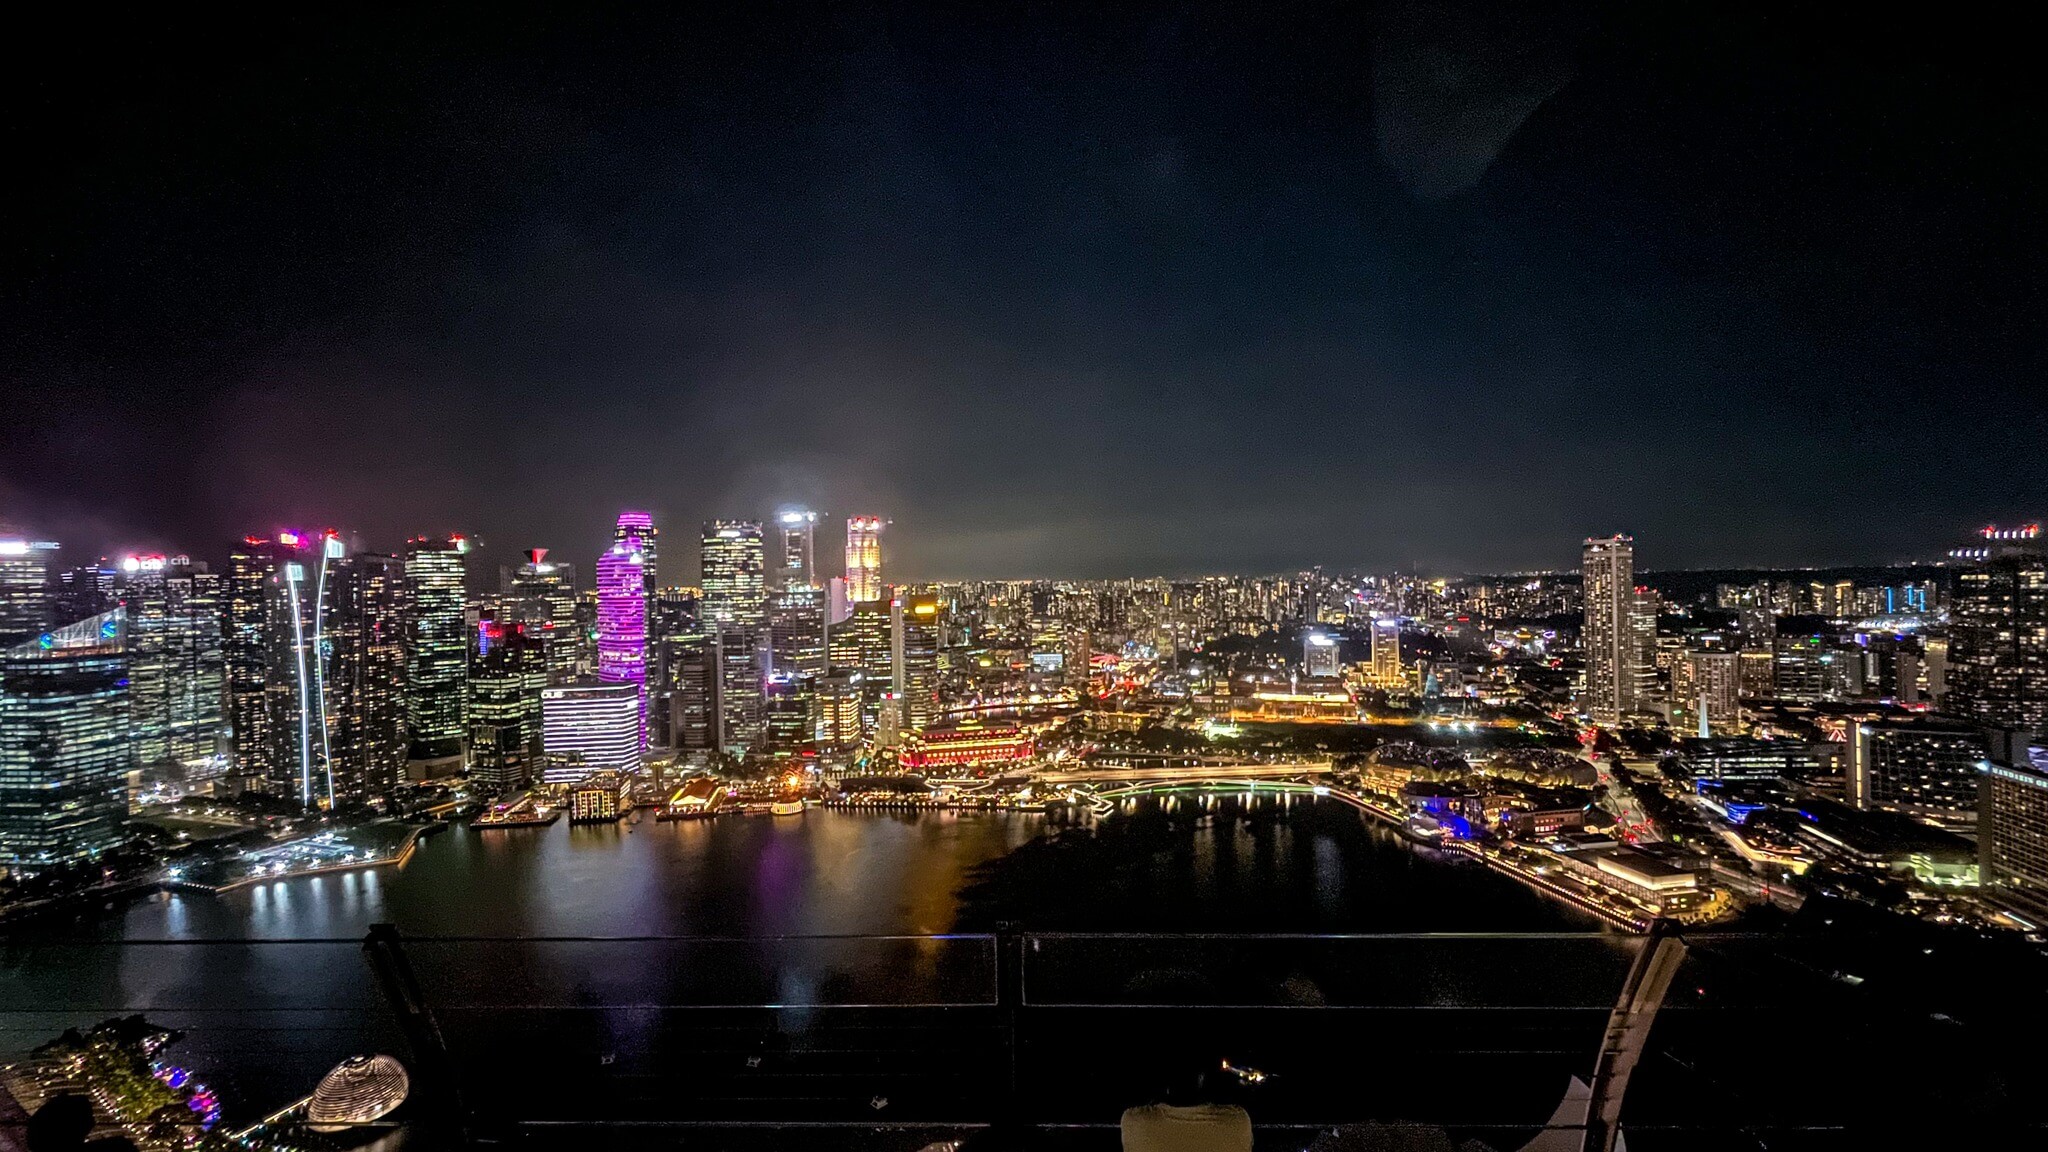 singapore_skyline